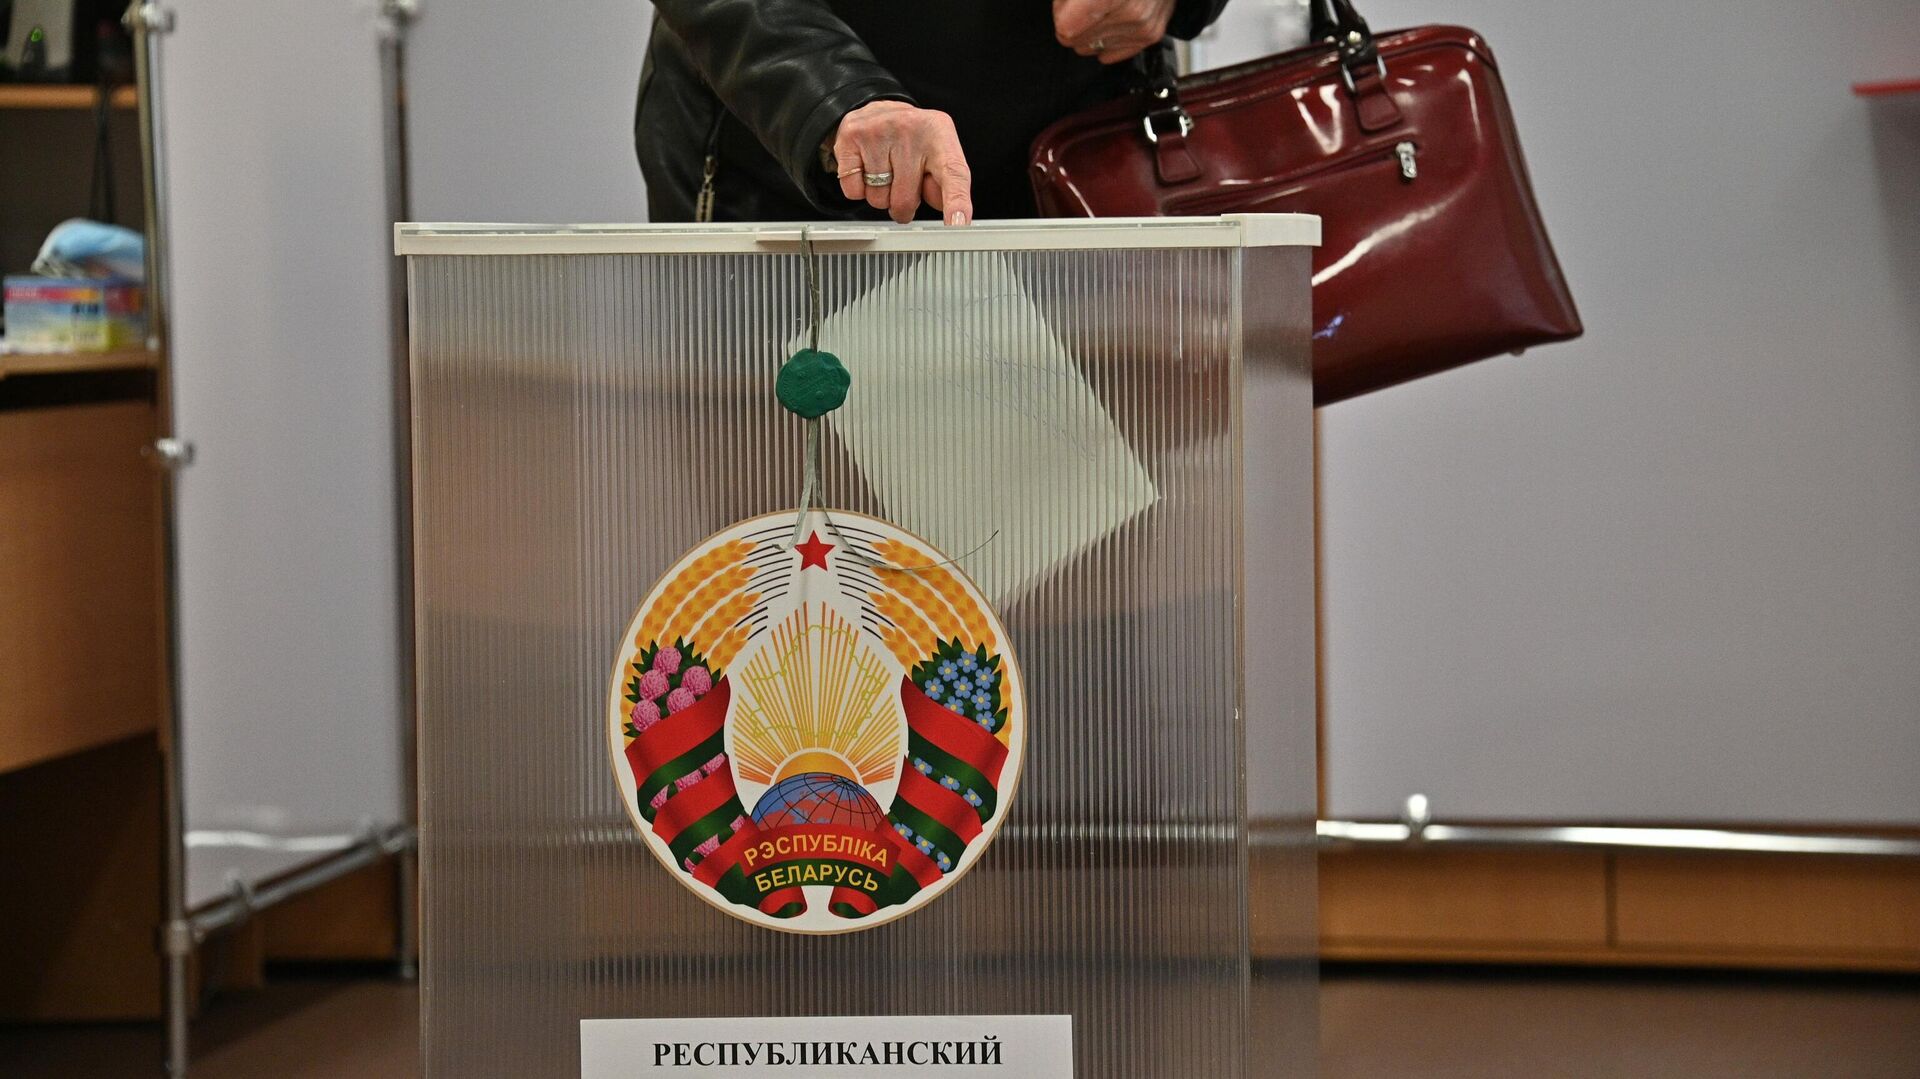 
Досрочное голосование на референдуме в Минске - Sputnik Беларусь, 1920, 16.02.2023